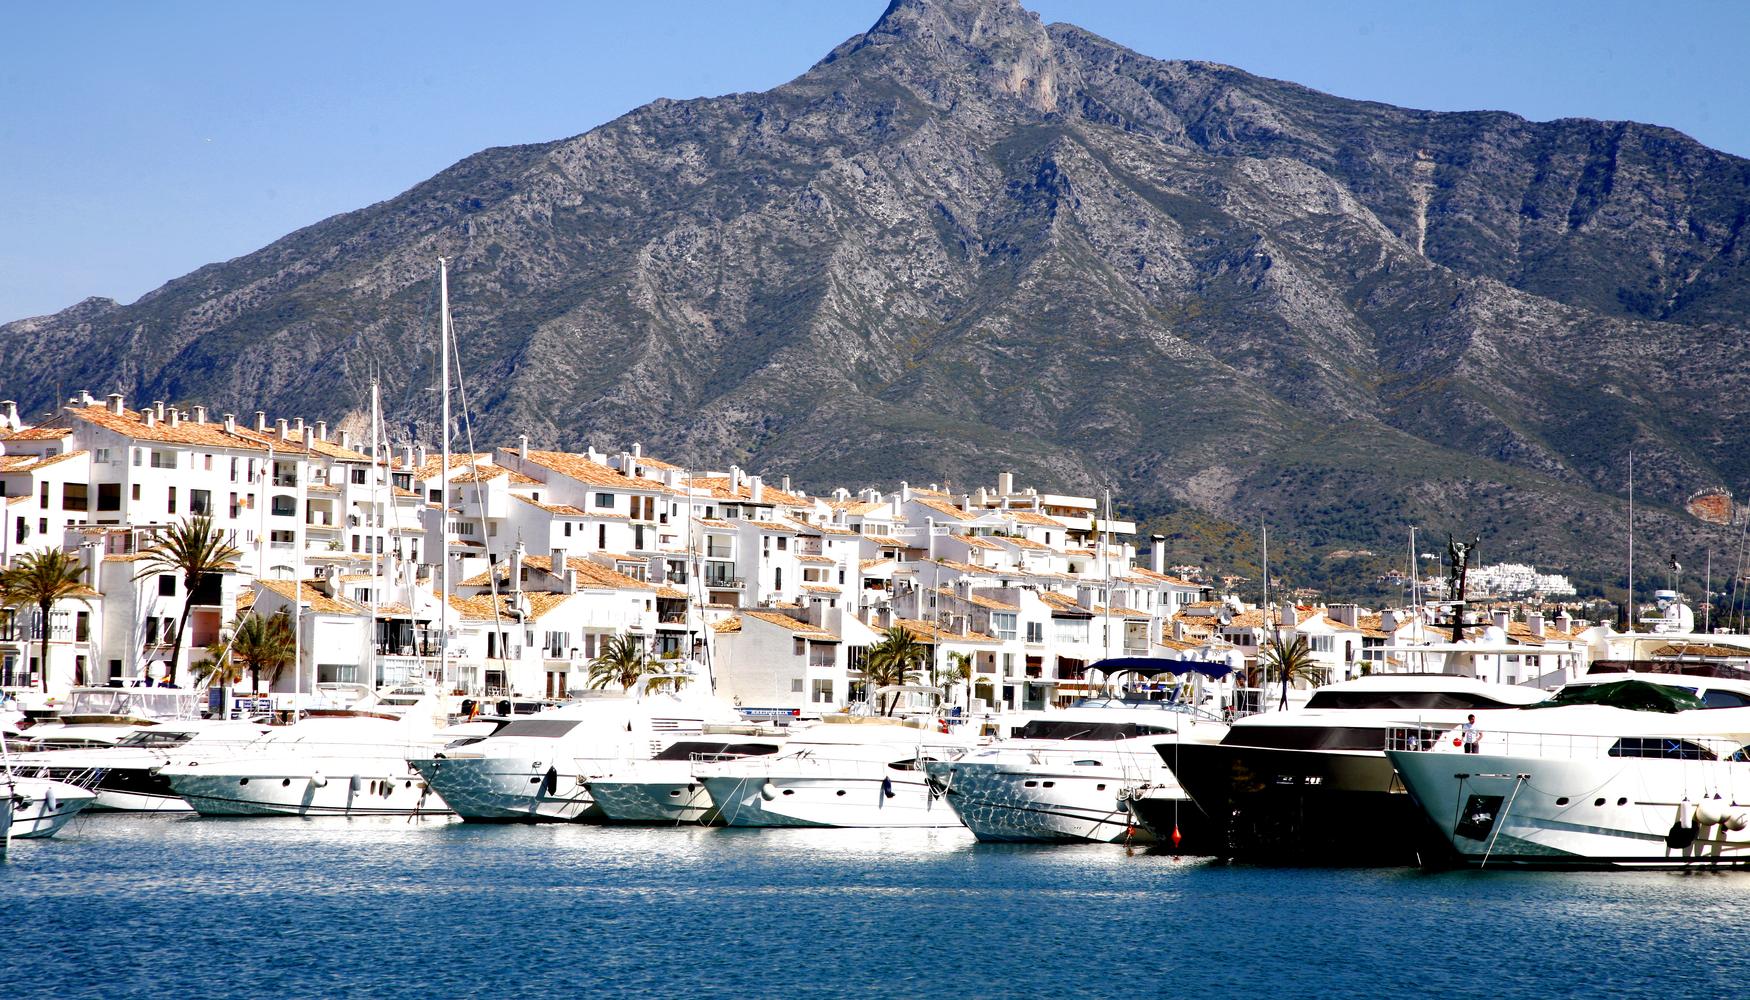 Marbella i la seva oferta de restaurants amb estrella Michelin: "una experiència cinc estrelles"